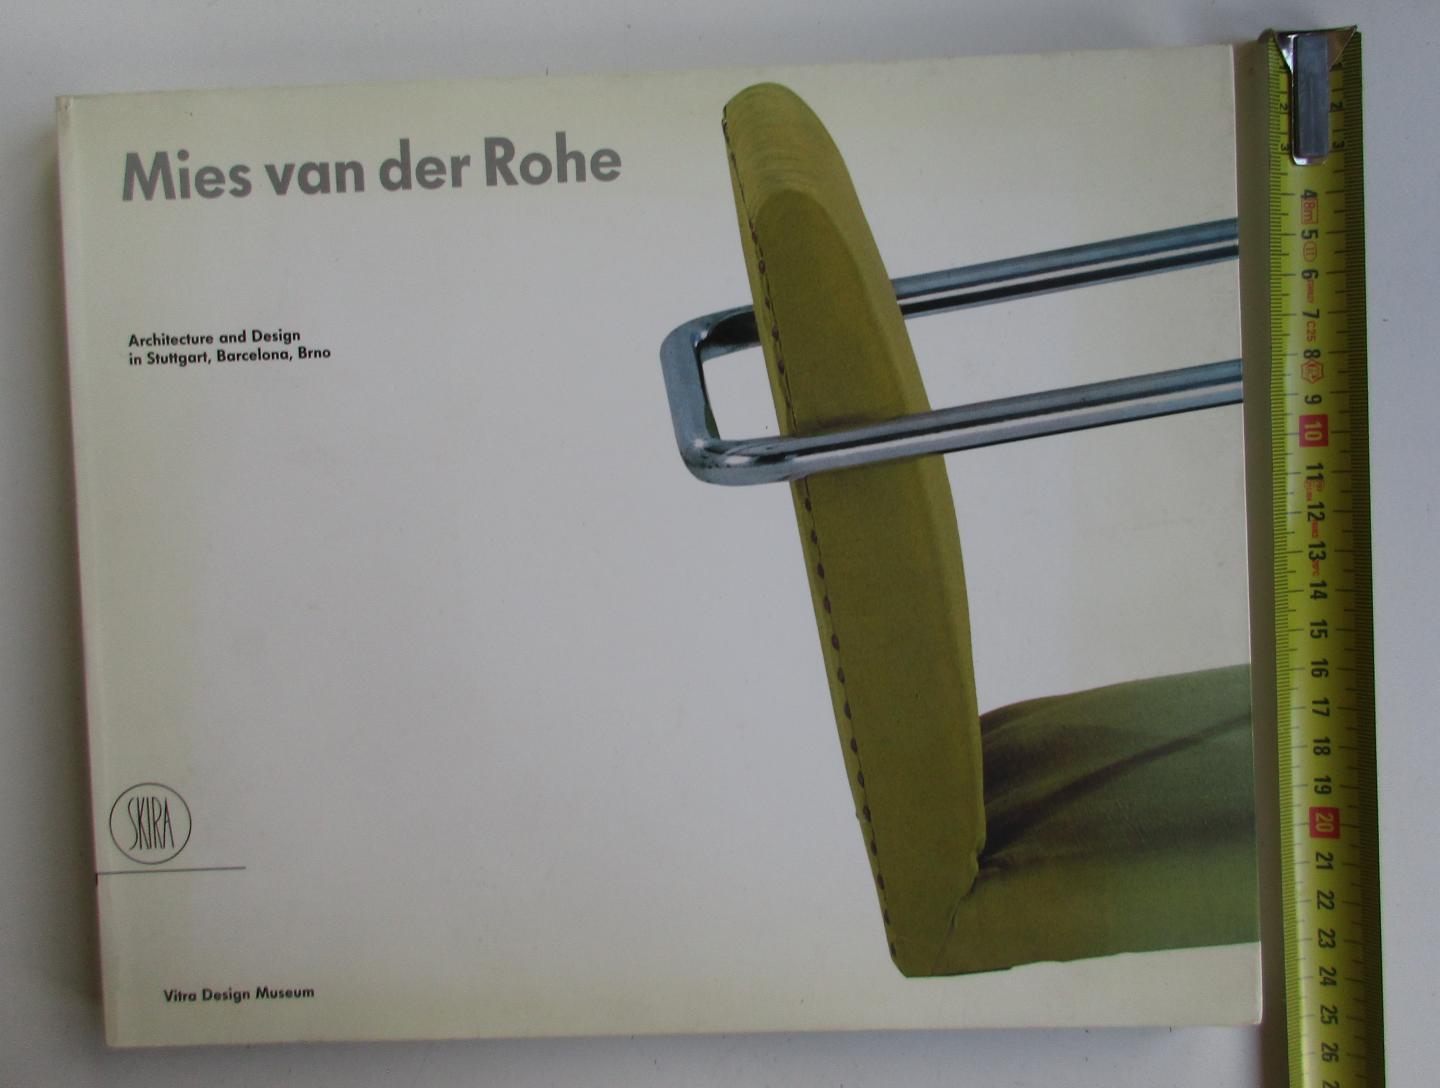 Von Vegesack, Alexander & Kries, Matthias (Eds) - Mies Van Der Rohe: Architecture and Design in Stuttgart, Barcelona, Brno